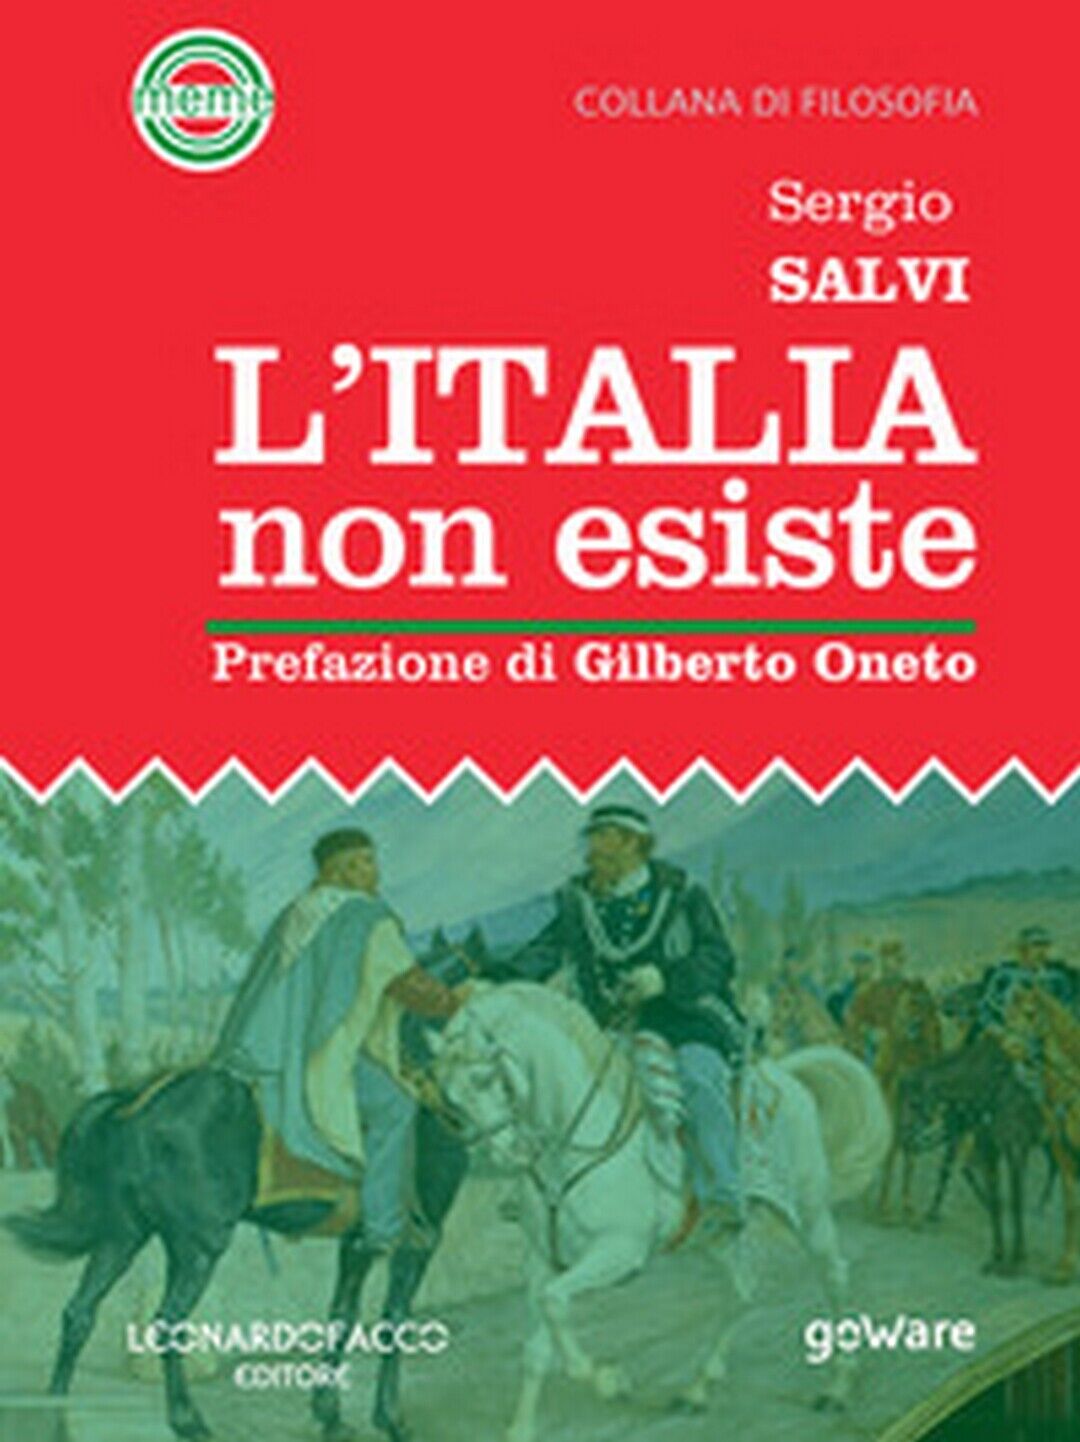 L'Italia non esiste  - Sergio Salvi,  2019,  Goware